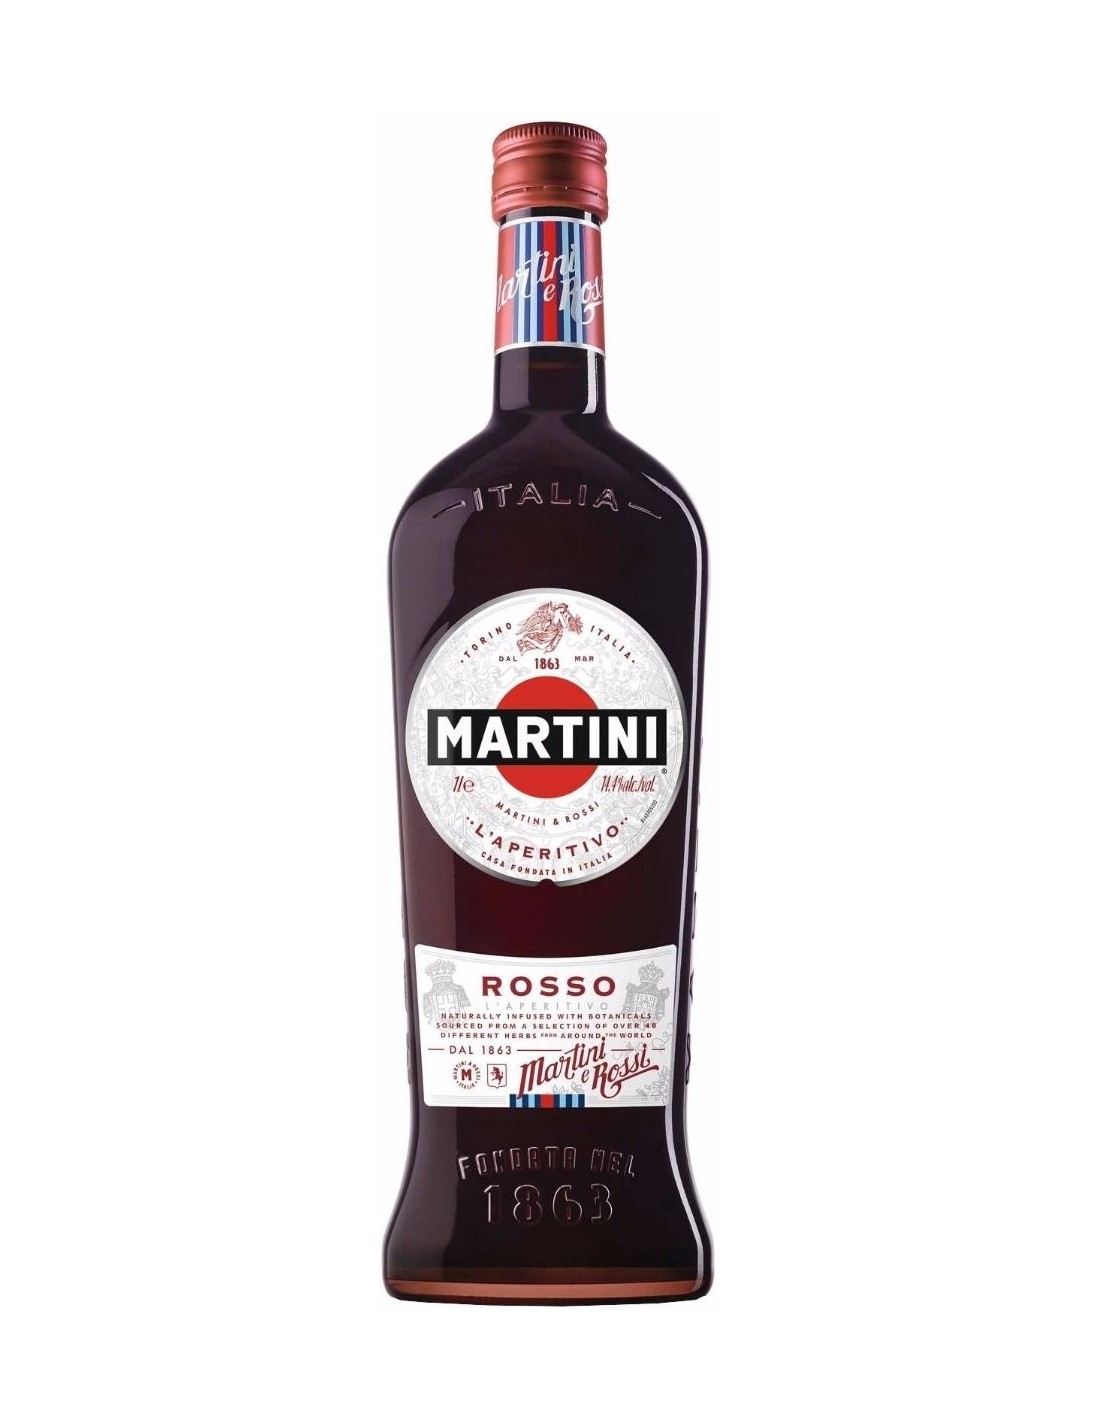 Aperitiv Martini Rosso, 15% alc., 1L, Italia alcooldiscount.ro